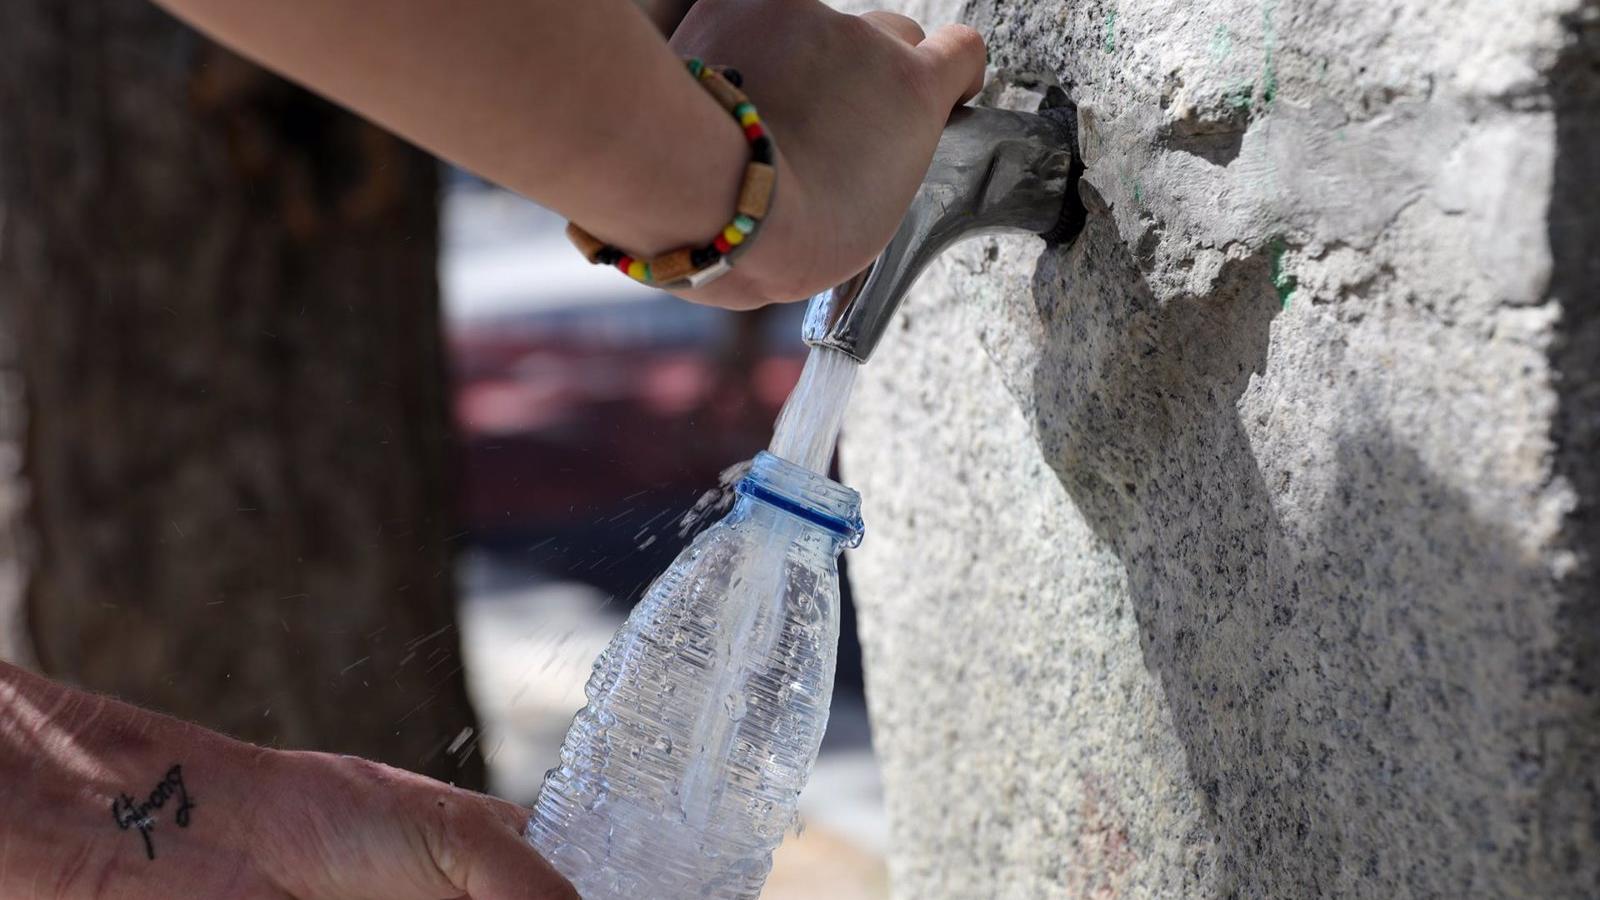 Beber abundante agua, usar ropa ligera o comer fruta, entre los consejos del Ayuntamiento de Torrejón por la ola de calor